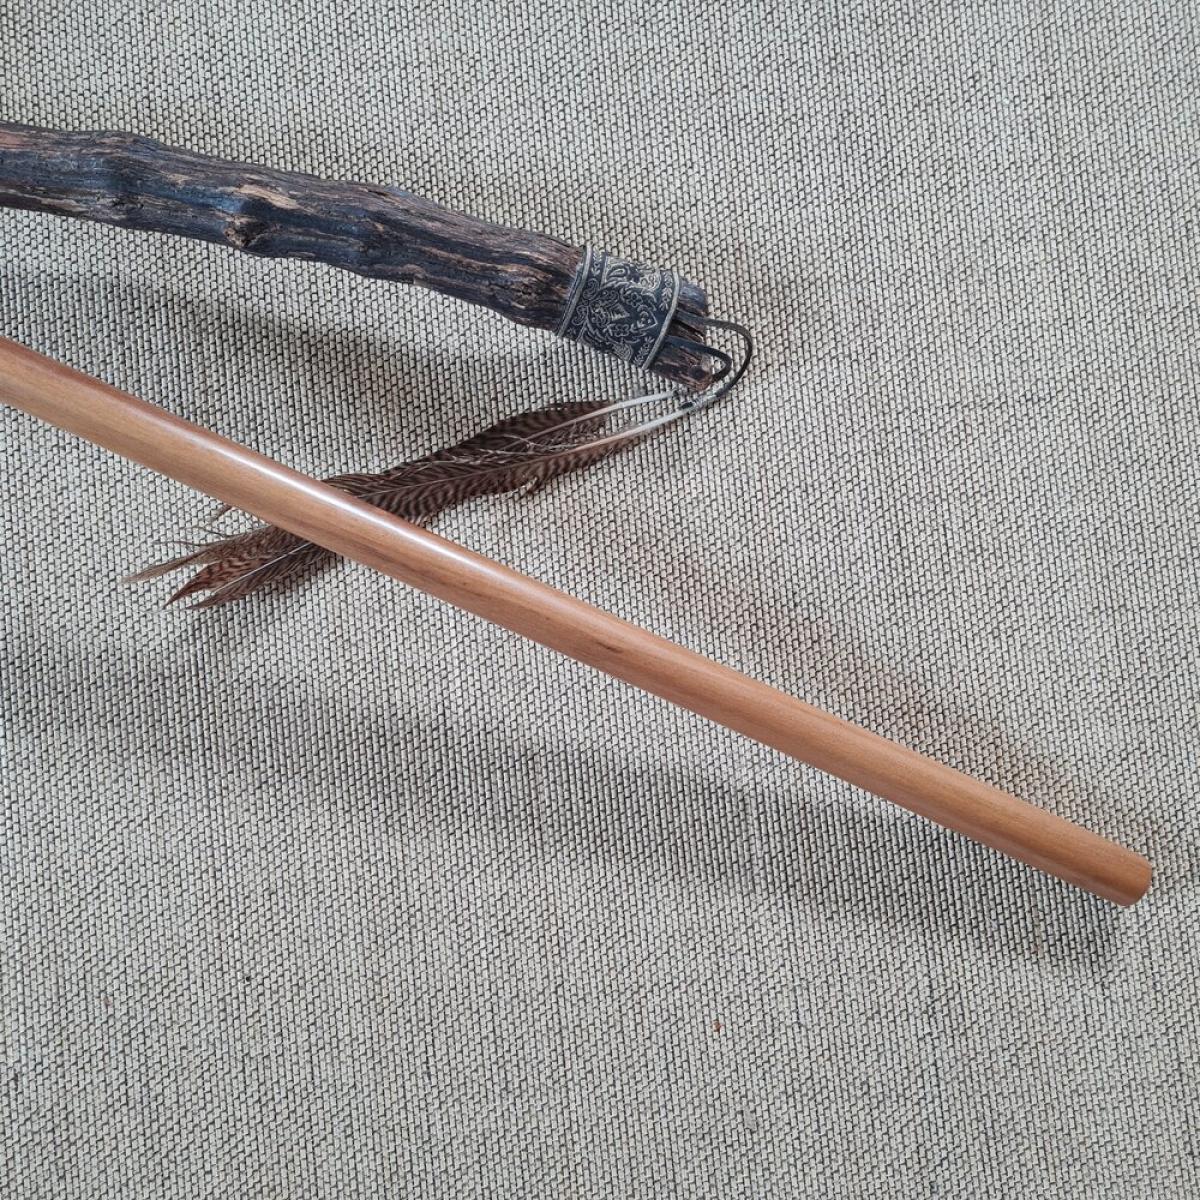 Jo stick made of Supa wood - length 128 cm ➤ www.bokken-shop.de. Suitable for Aikido, Iaido, Jo-Jutsu, Jodo, Bujinkan. Your Budo dealer!